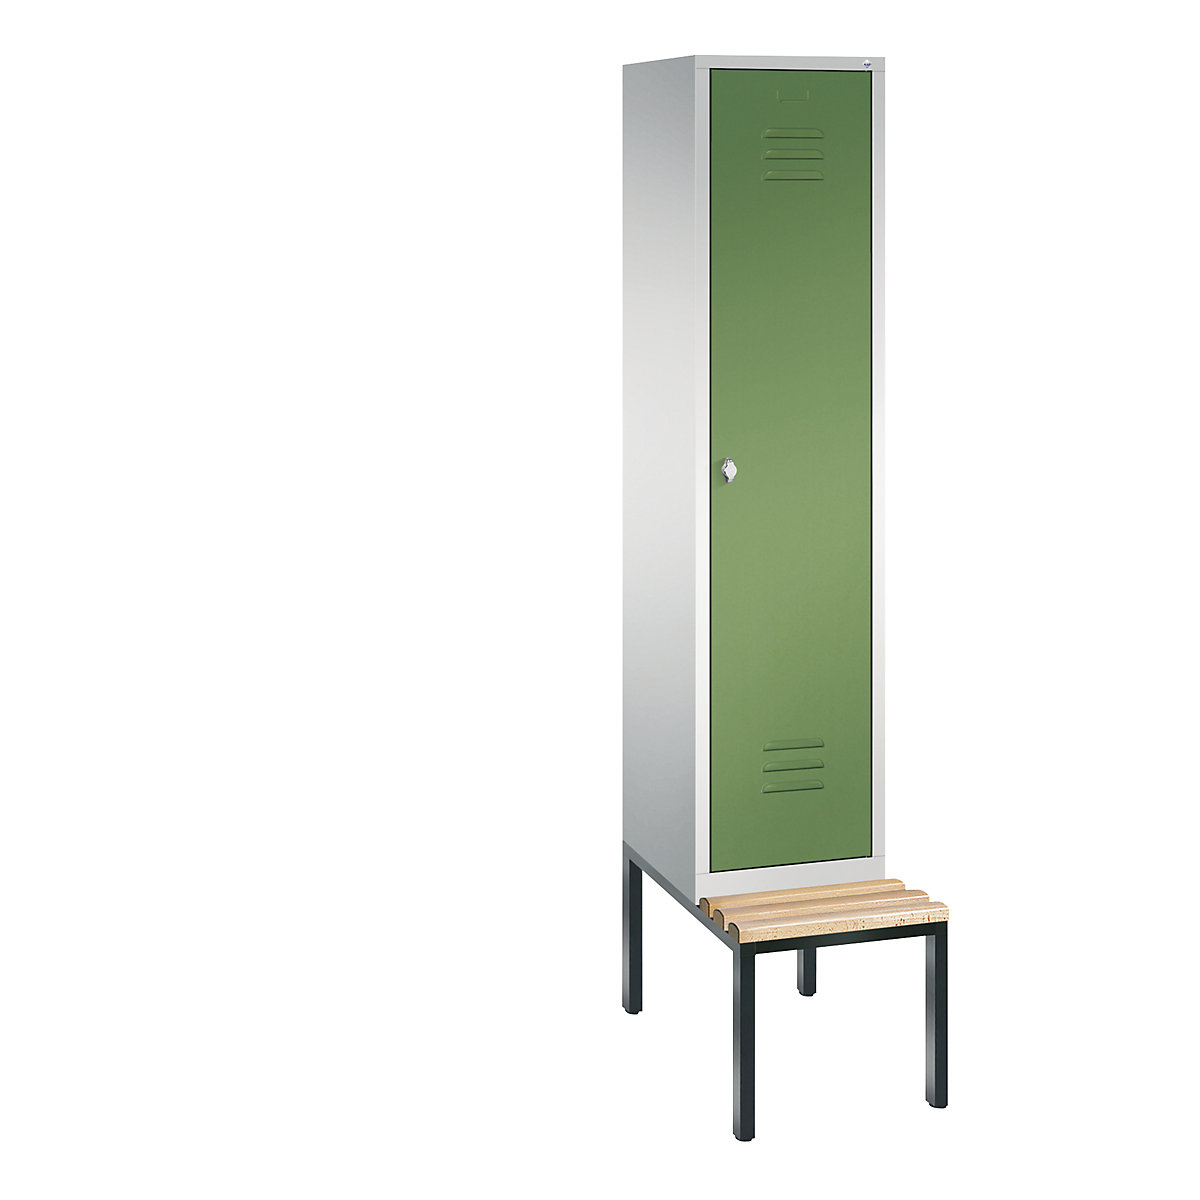 Garderobna omara CLASSIC s klopjo – C+P, 1 predelek, širina 400 mm/predelek, svetlo sive / reseda zelene barve-7